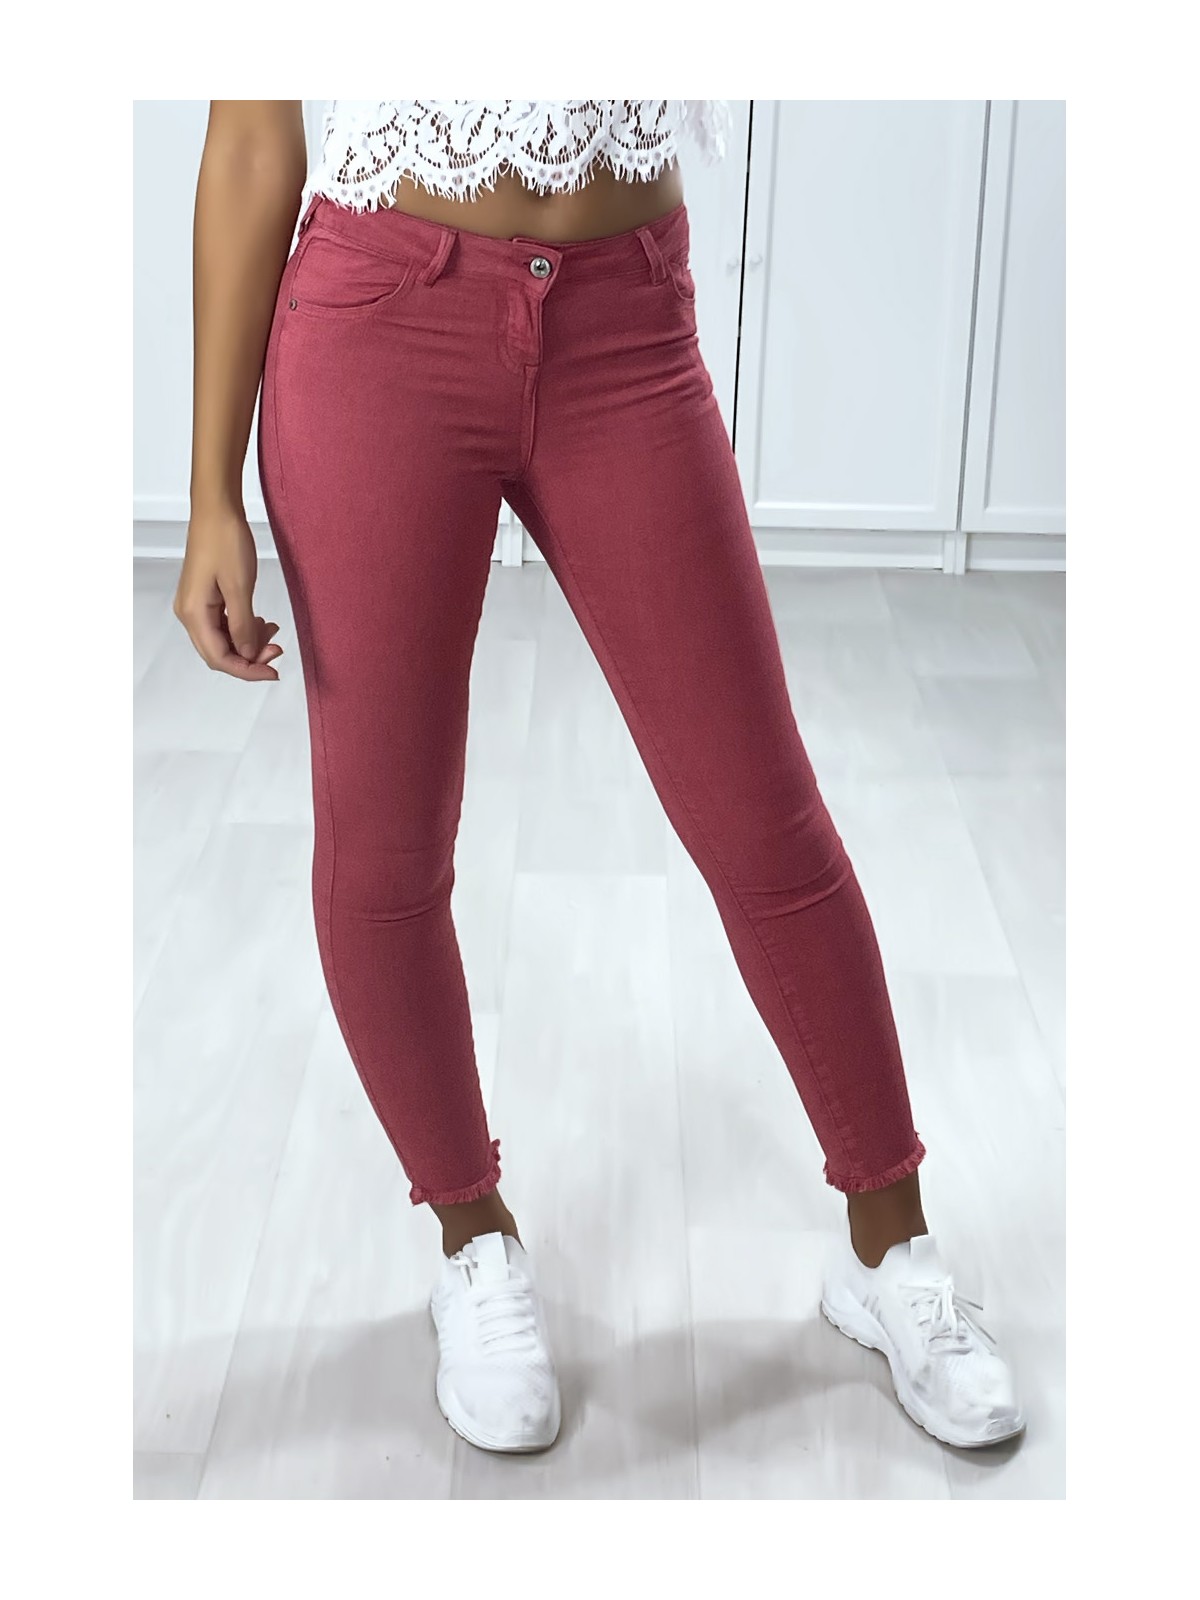 Jeans slim fuchsia avec poches - 1